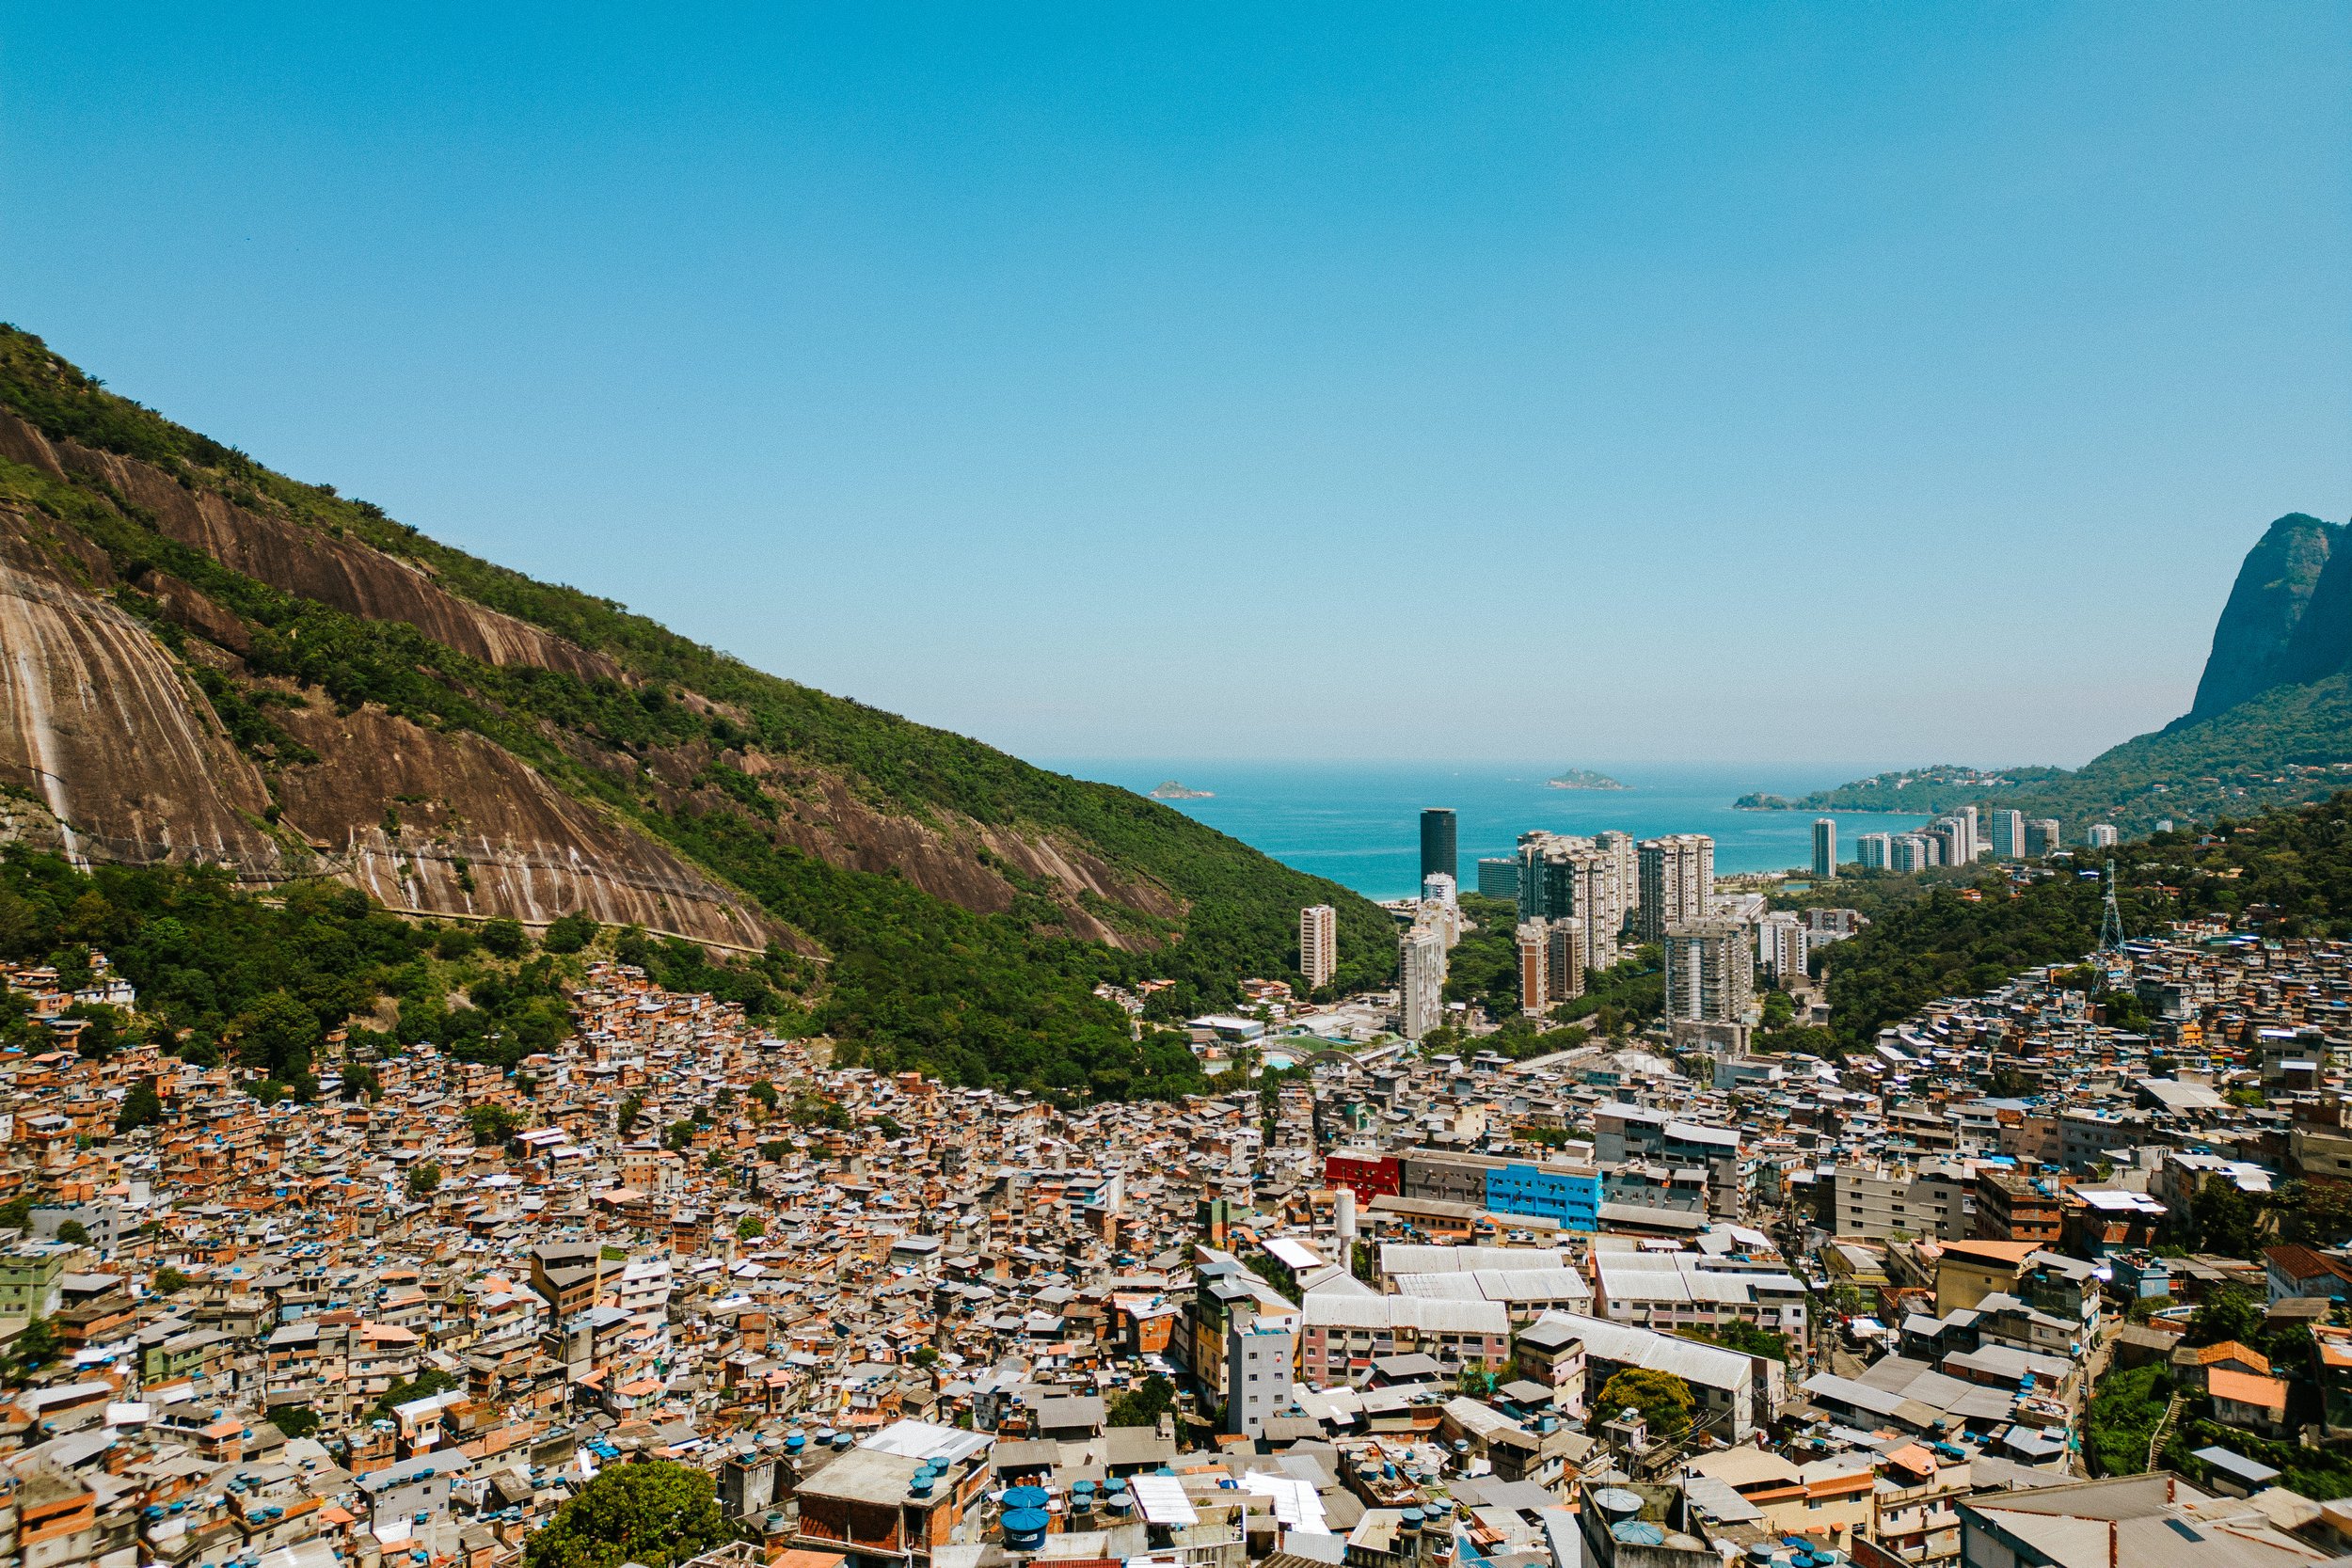 favela-da-rocinha-rio-de-janeiro-guia-turistico-para-favela-ricardo-franzen-producao-de-filme-documentario-educacao-na-favela-rio-de-janeiro-rocinha-1.jpg